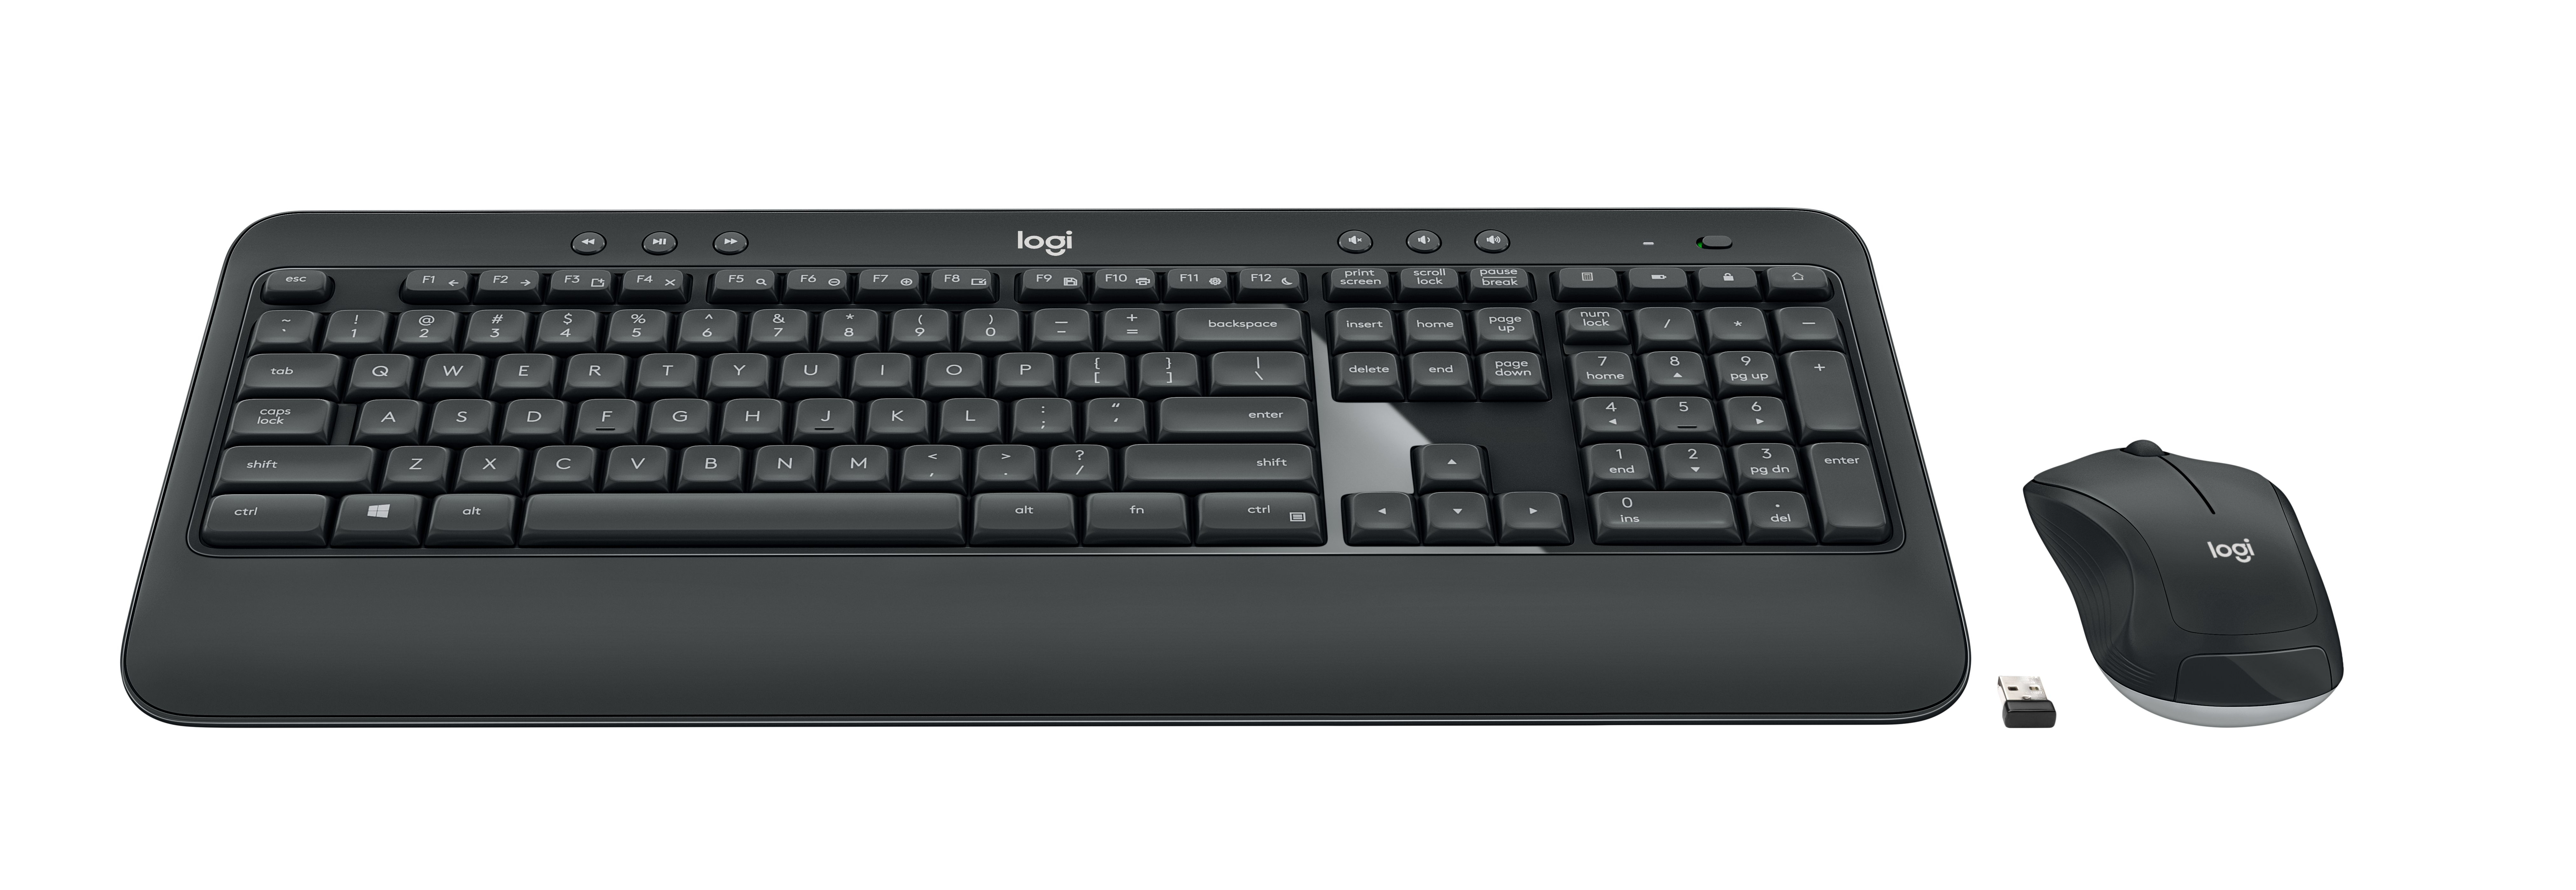 Logitech MK540 Advanced wireless keyboard + mouse set, draadloos, 2.4 GHz, vs internationaal